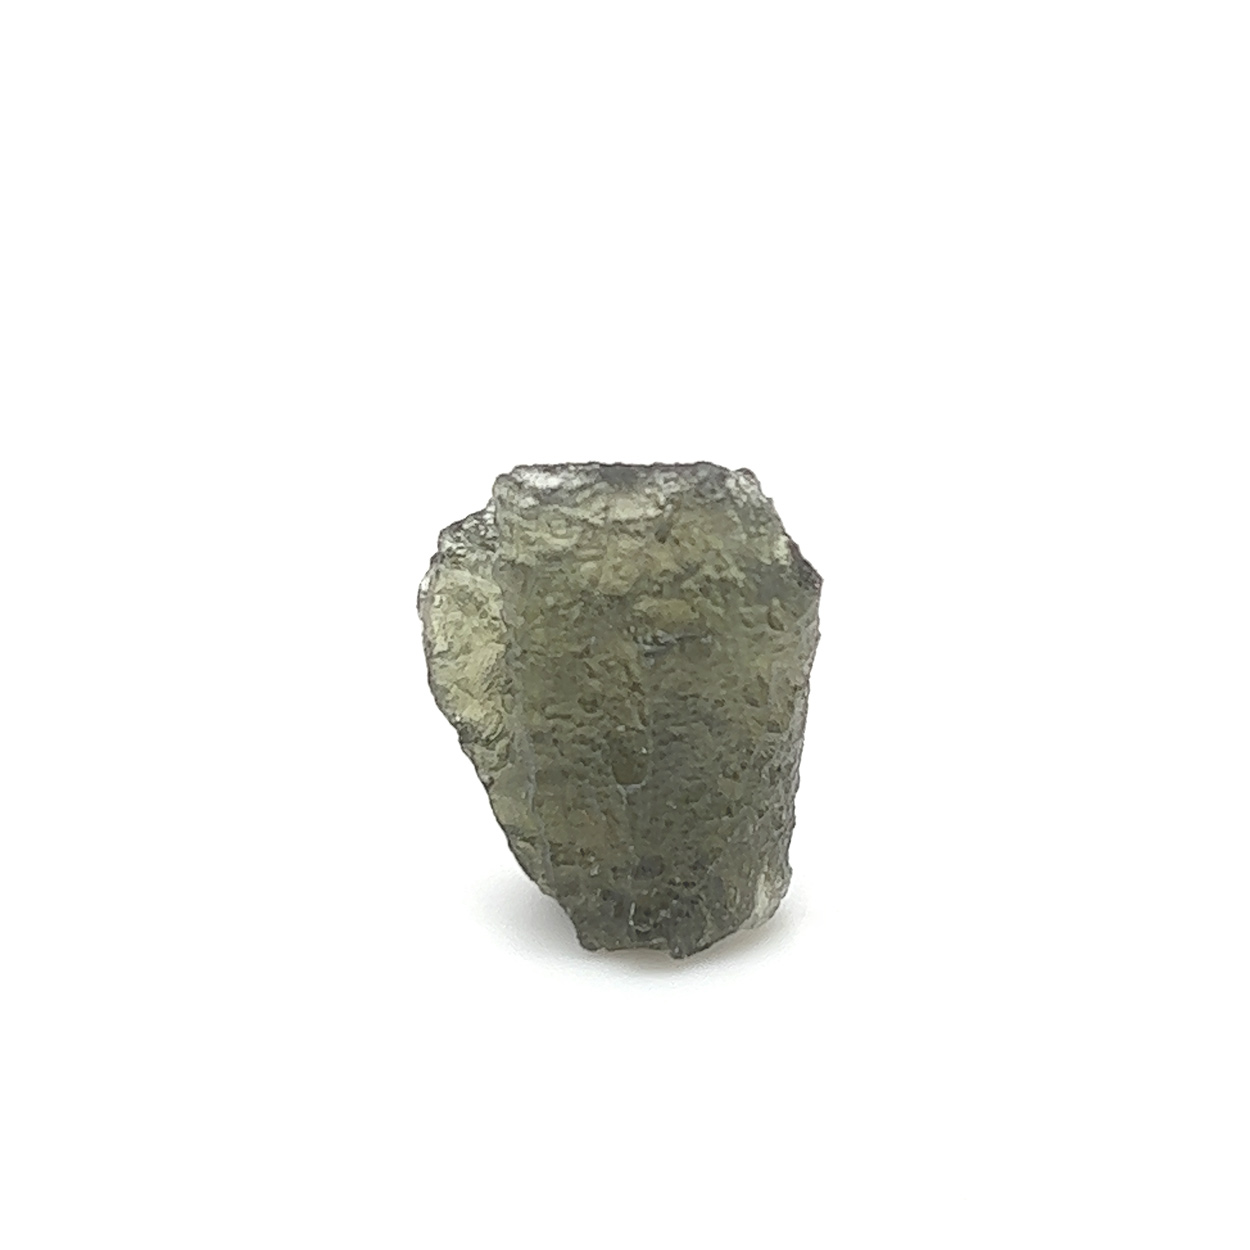 Genuine Moldavite Specimen k658__2022-07-22-14-21-12